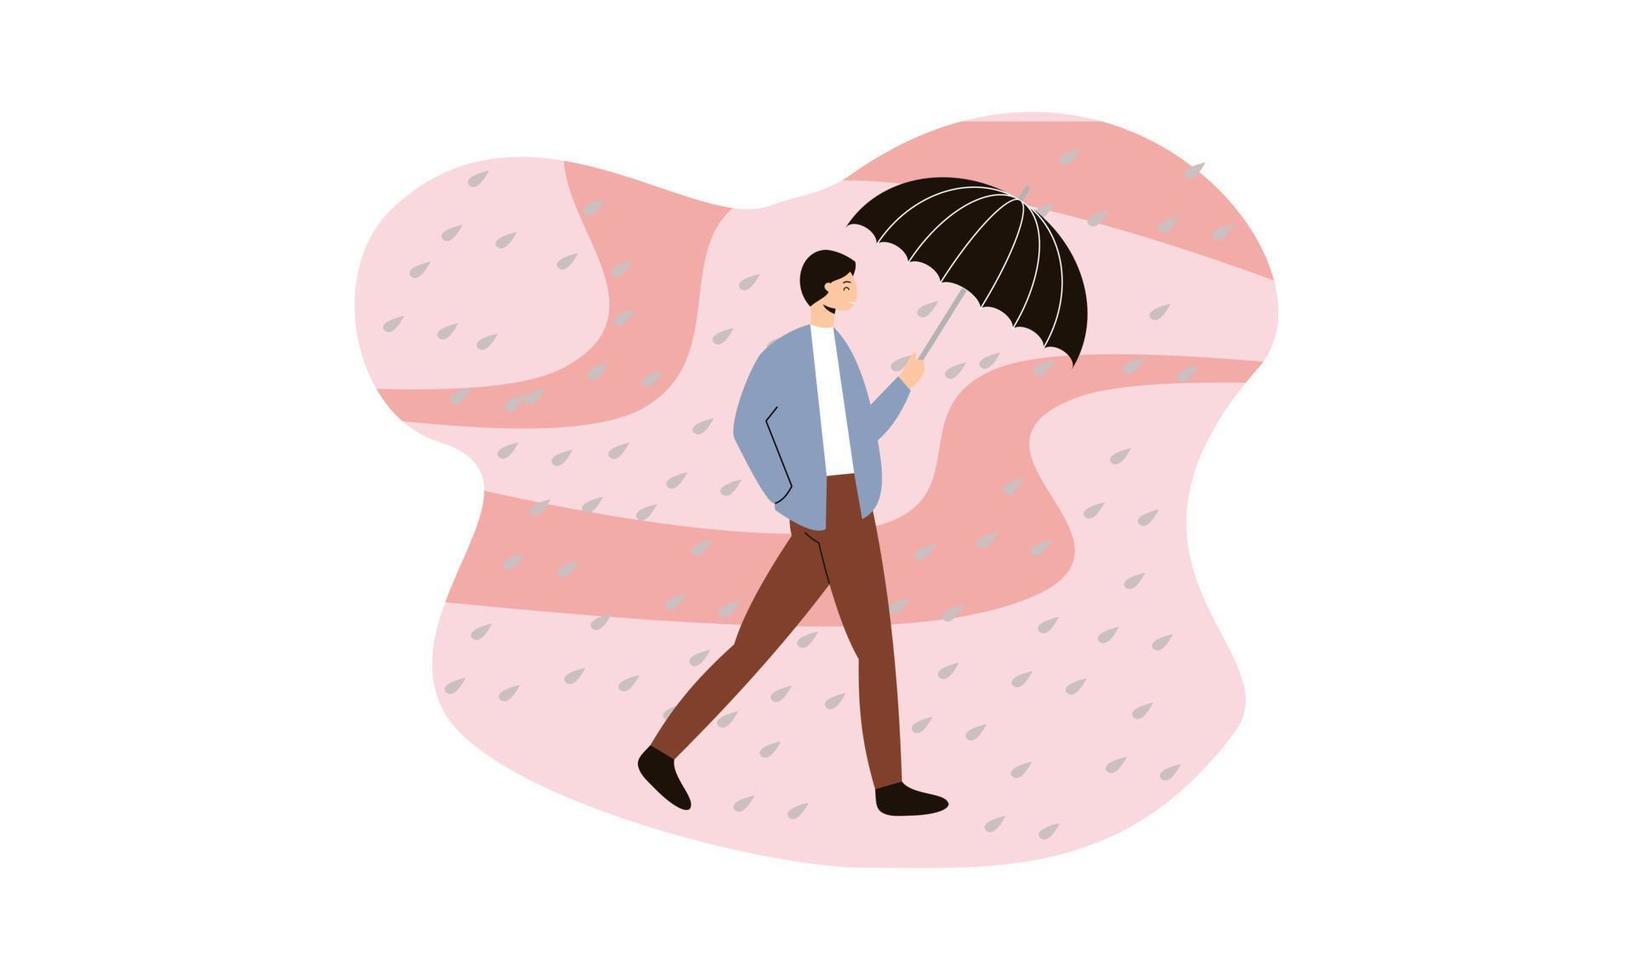 människor som går med paraplyer väder med regniga landskap illustration vektor